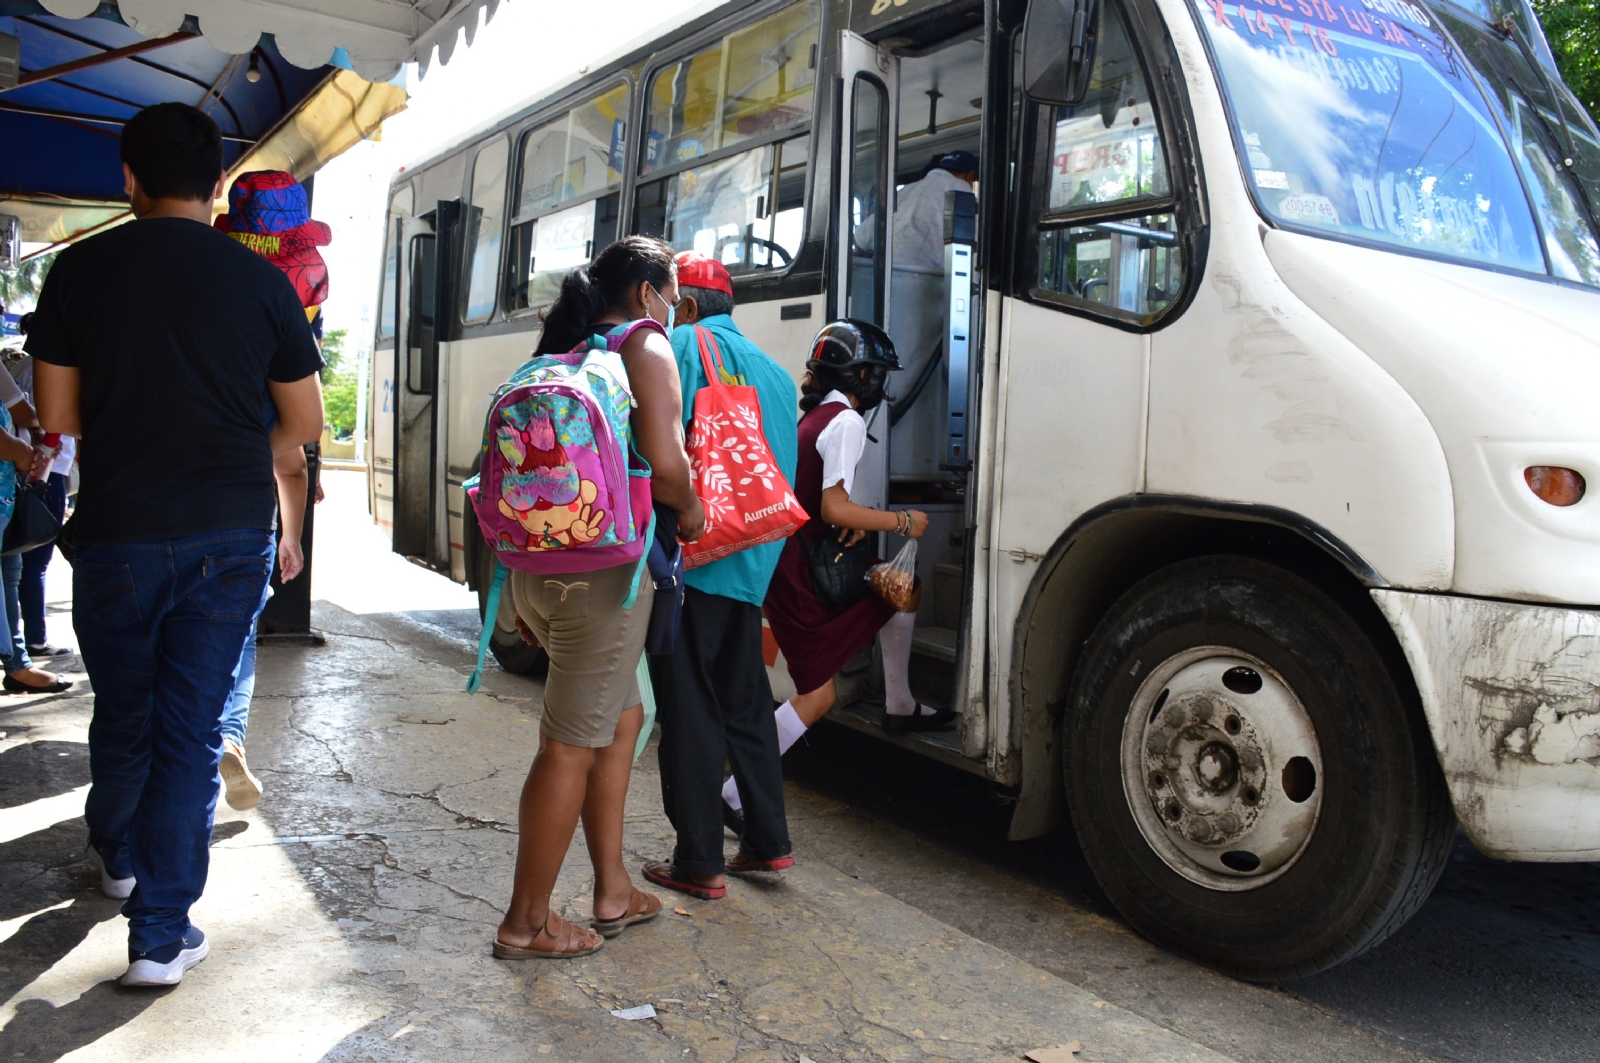 Reportan robos y acoso en el transporte público en Campeche; hay operadores sancionados: IET